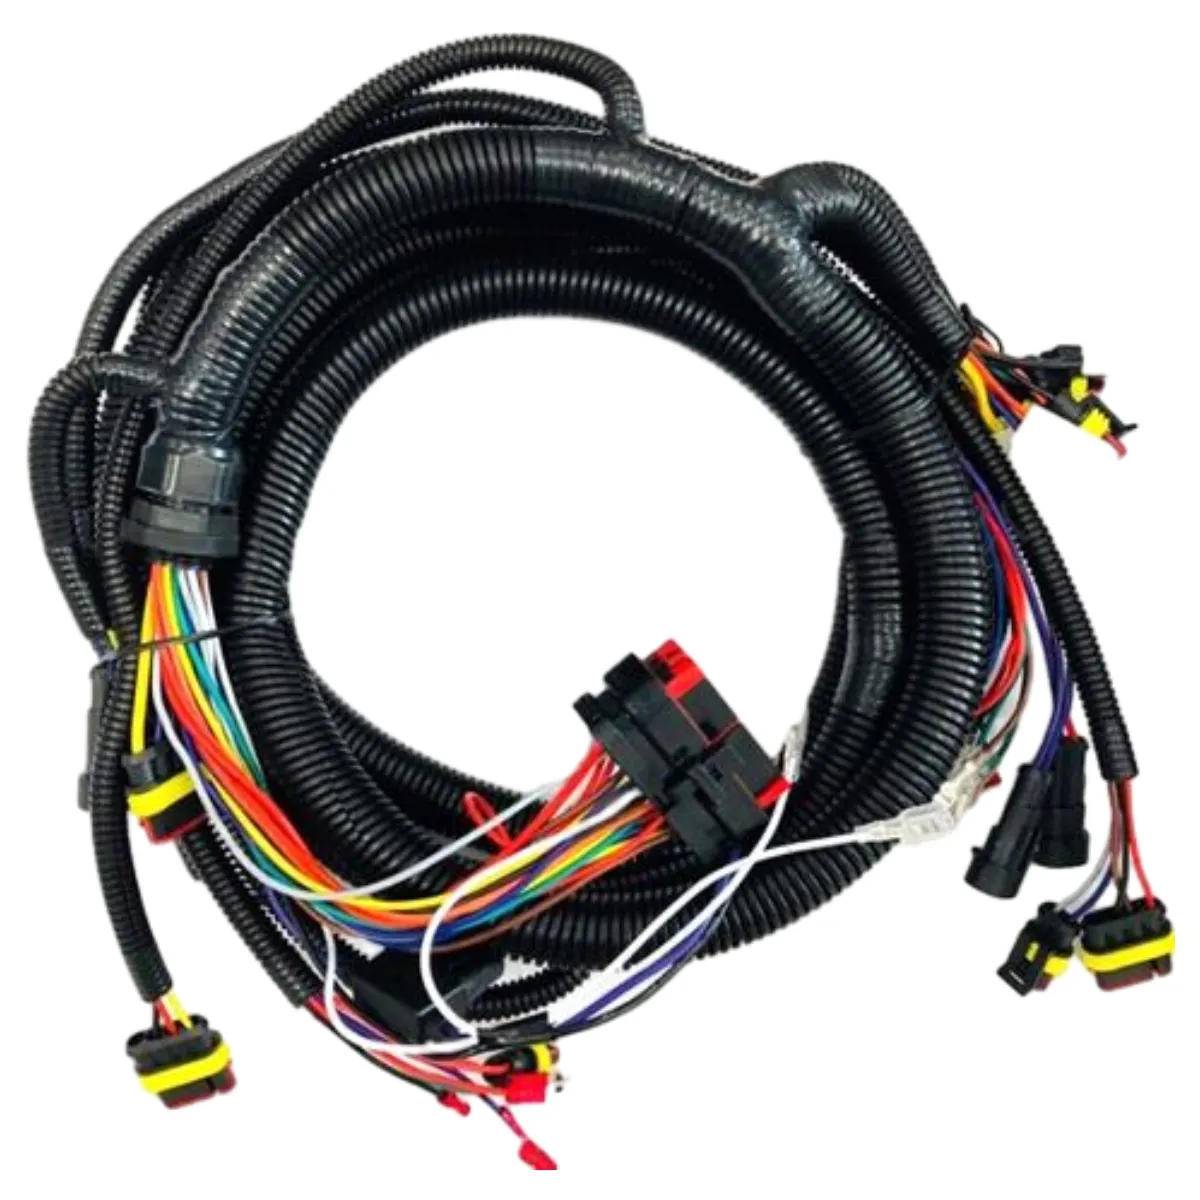 完全な配線ハーネスアセンブリケーブル自動車用ワイヤーハーネスOEMカスタマイズされたケーブルアセンブリ、端子コネクタ、FFCケーブル付き